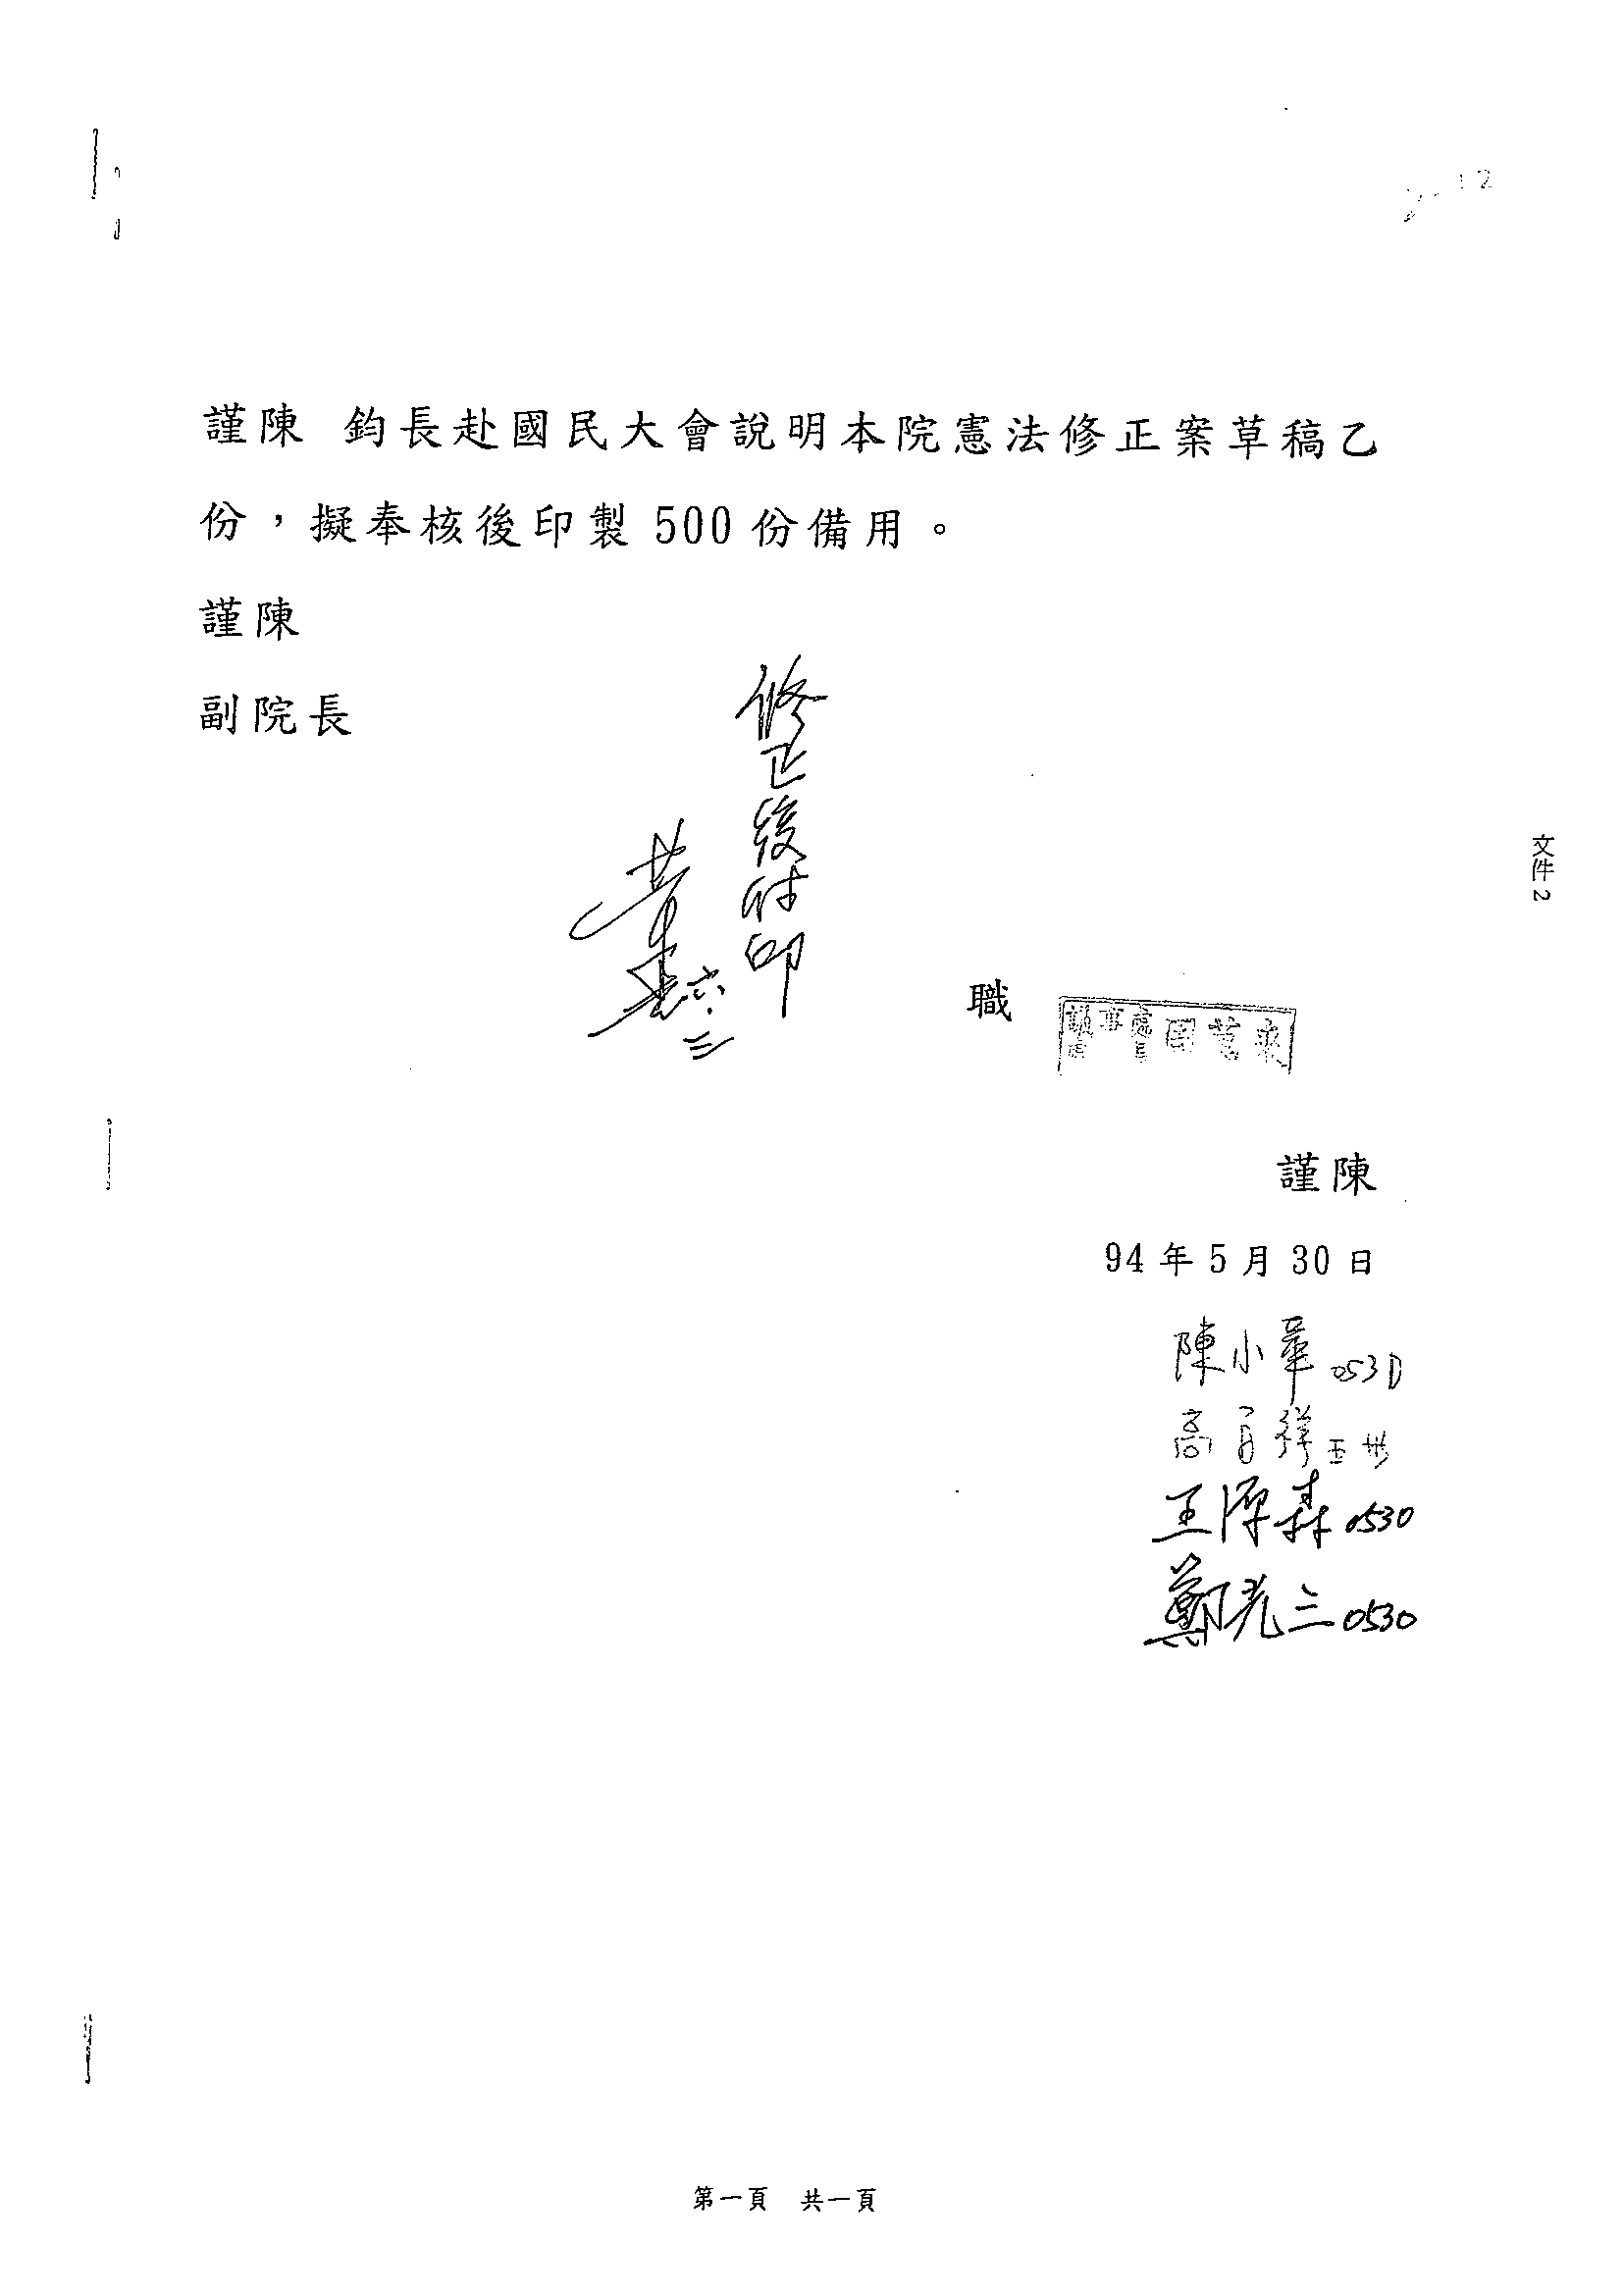 鍾榮吉副院長報告立法院憲法修正案提案要旨10921相關照片